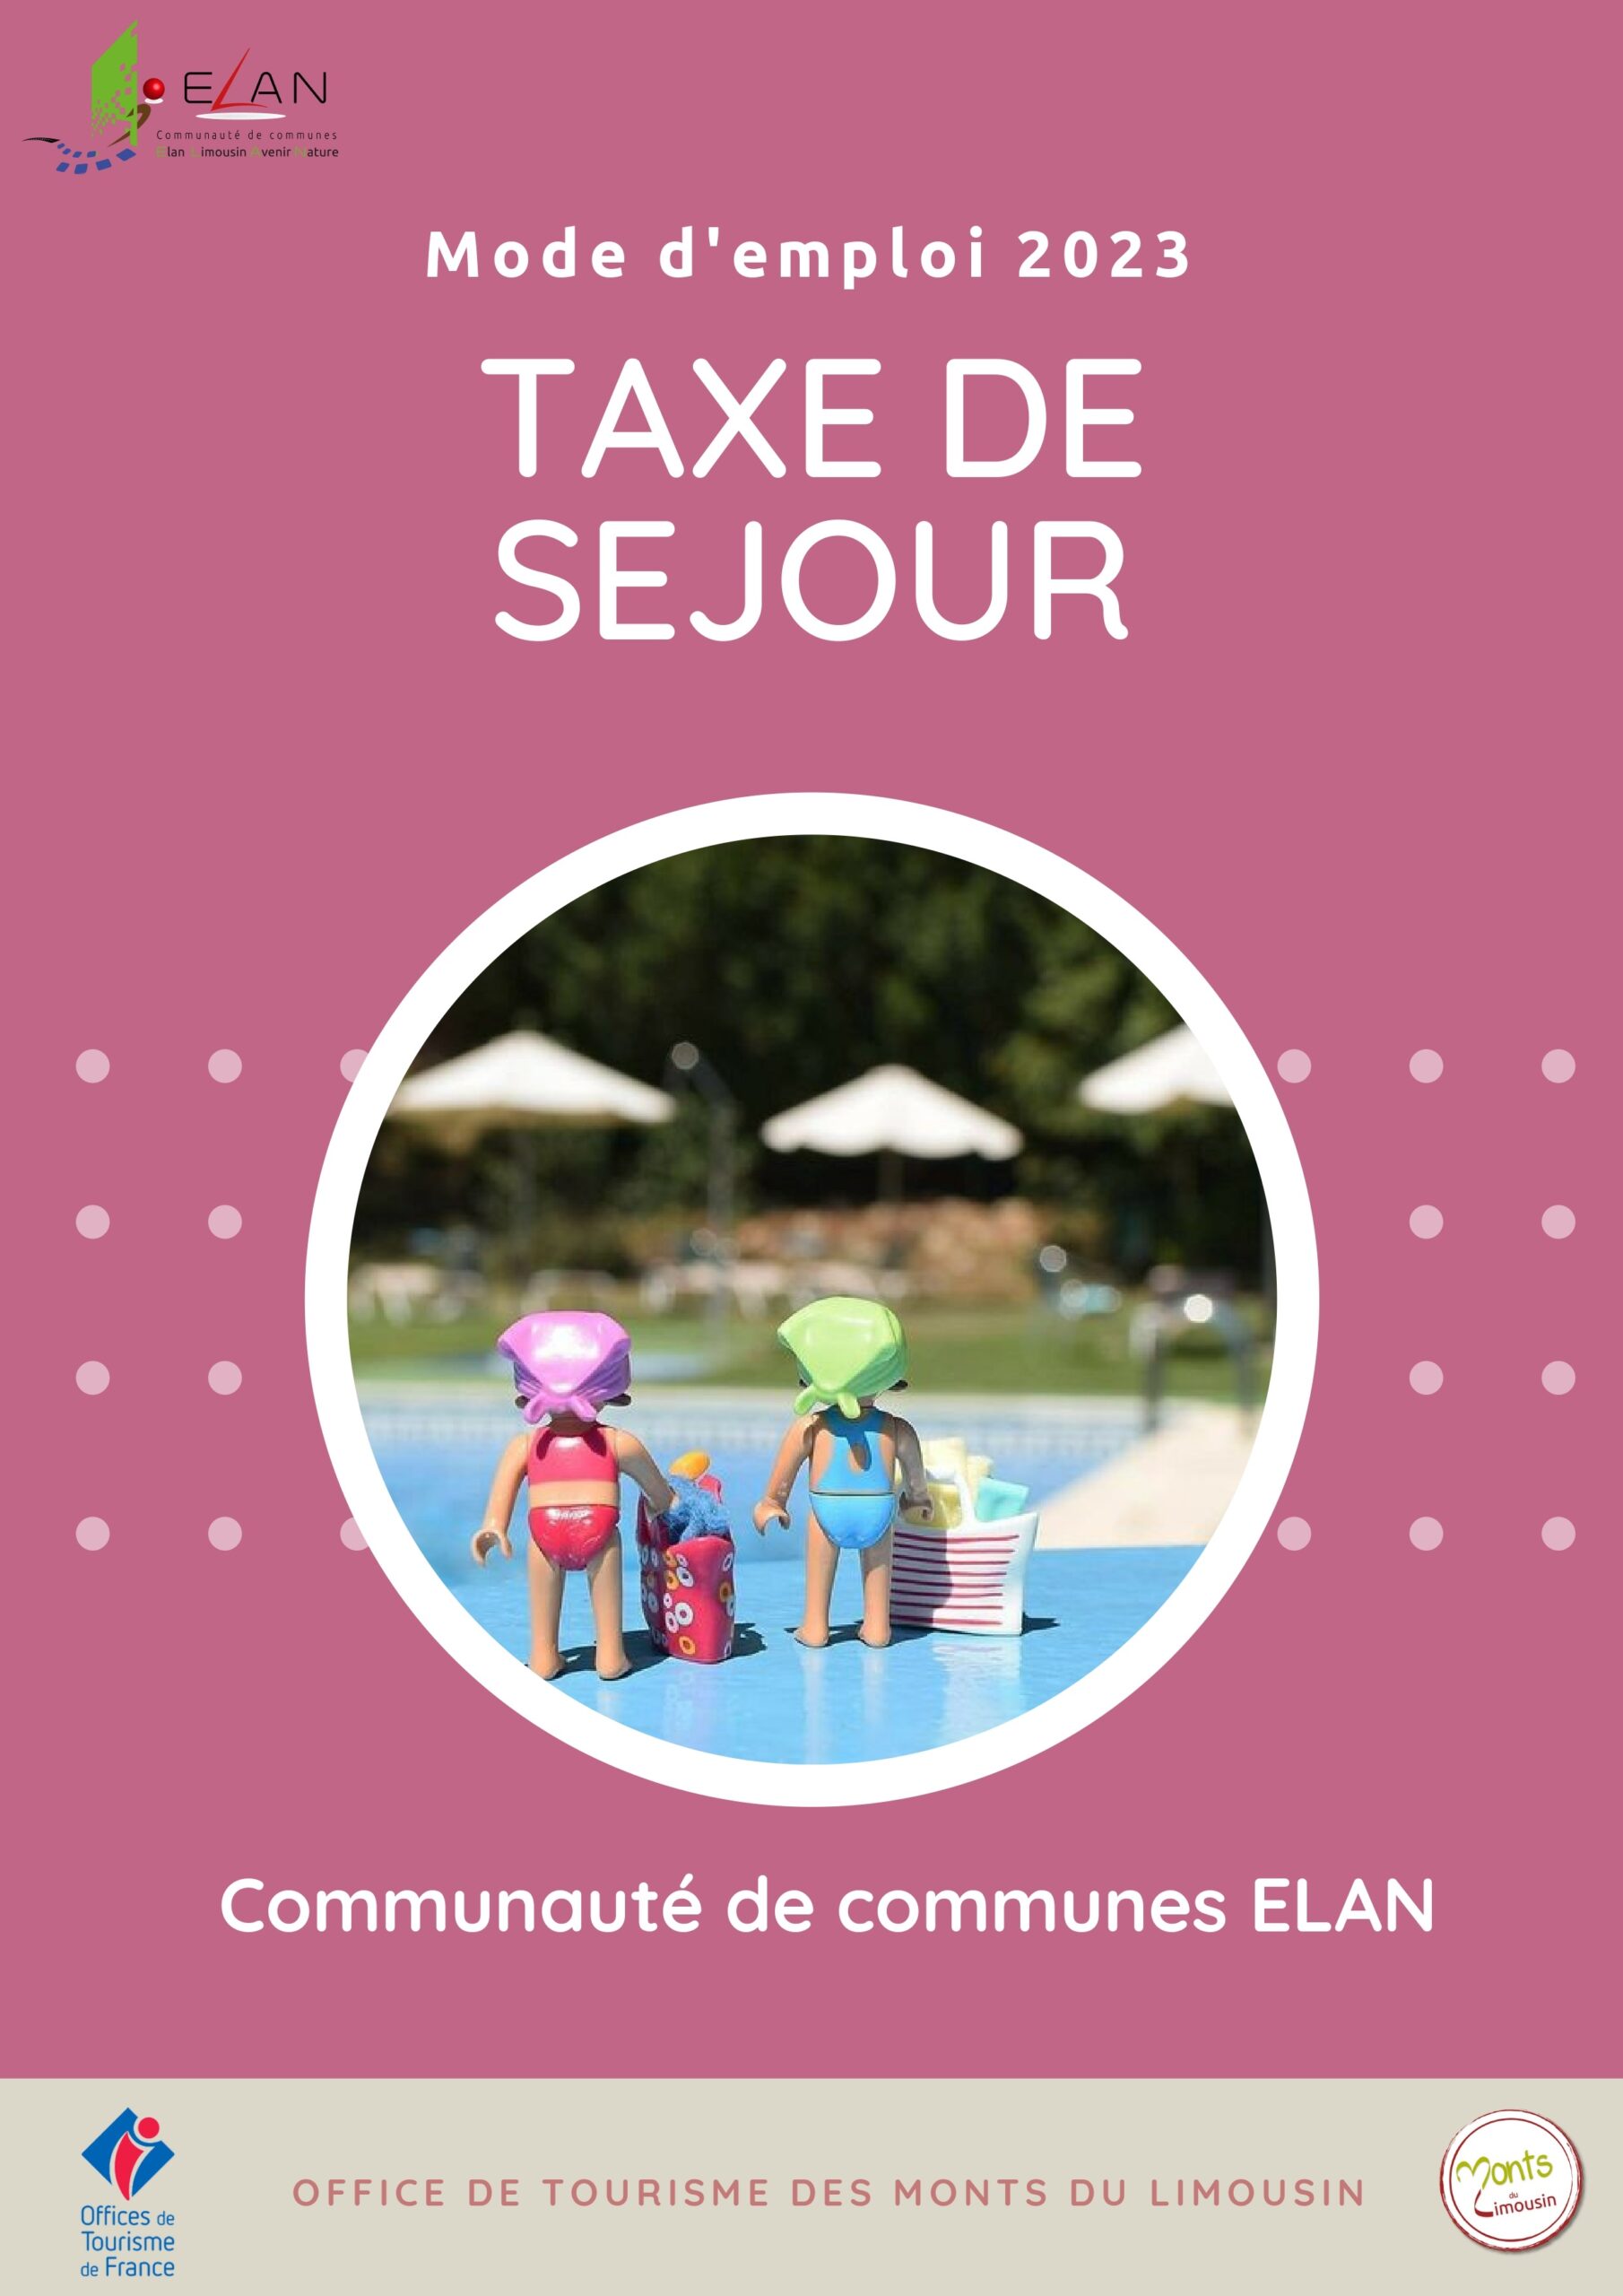 Tourist tax Monts du Limousin